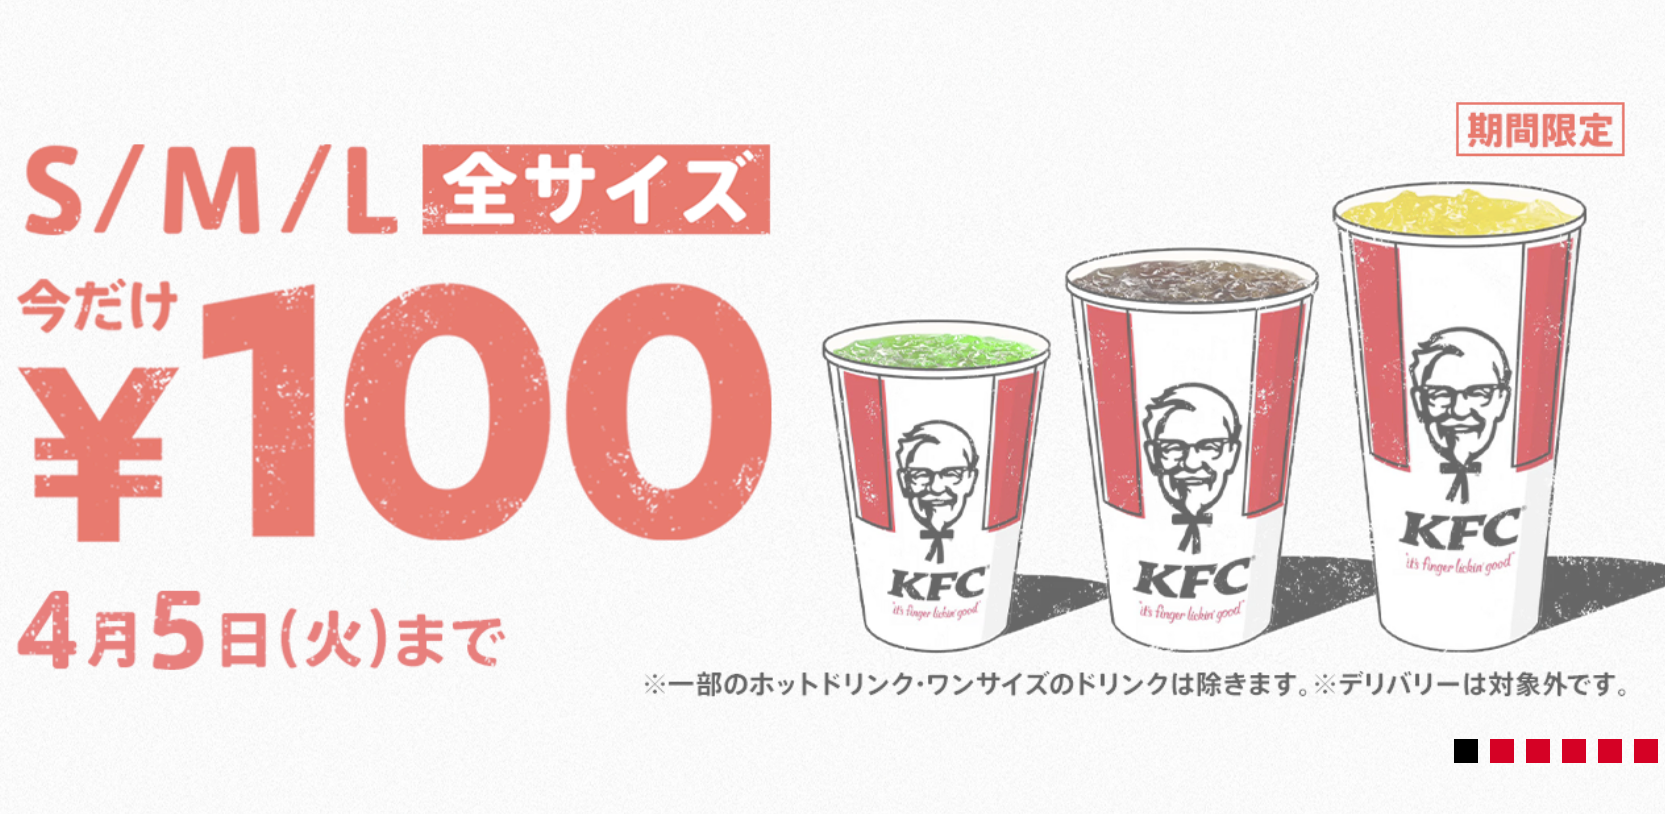 Ad Japanese KFC